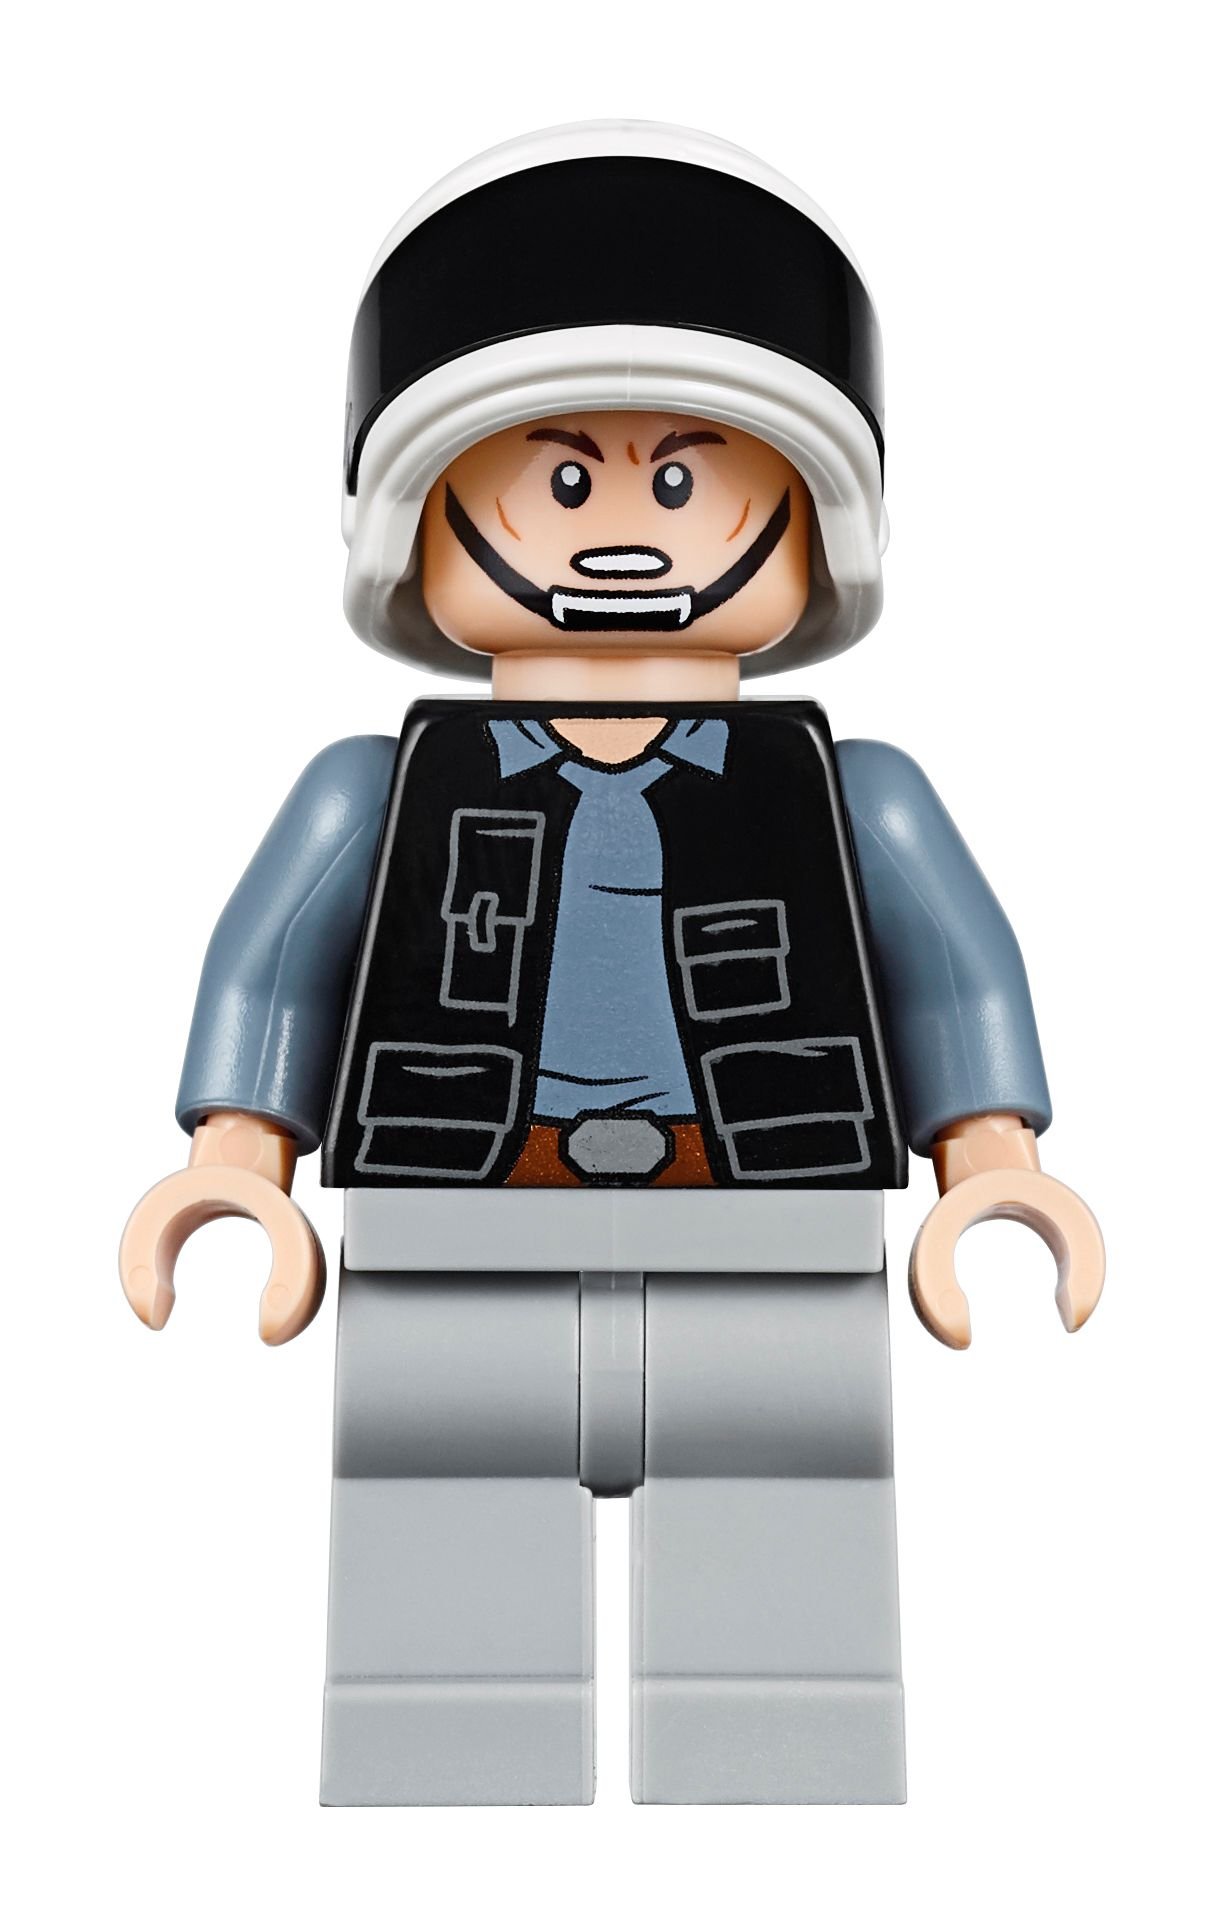 LEGO Star Wars 75244 Tantive IV LEGO_75244_alt19.jpg